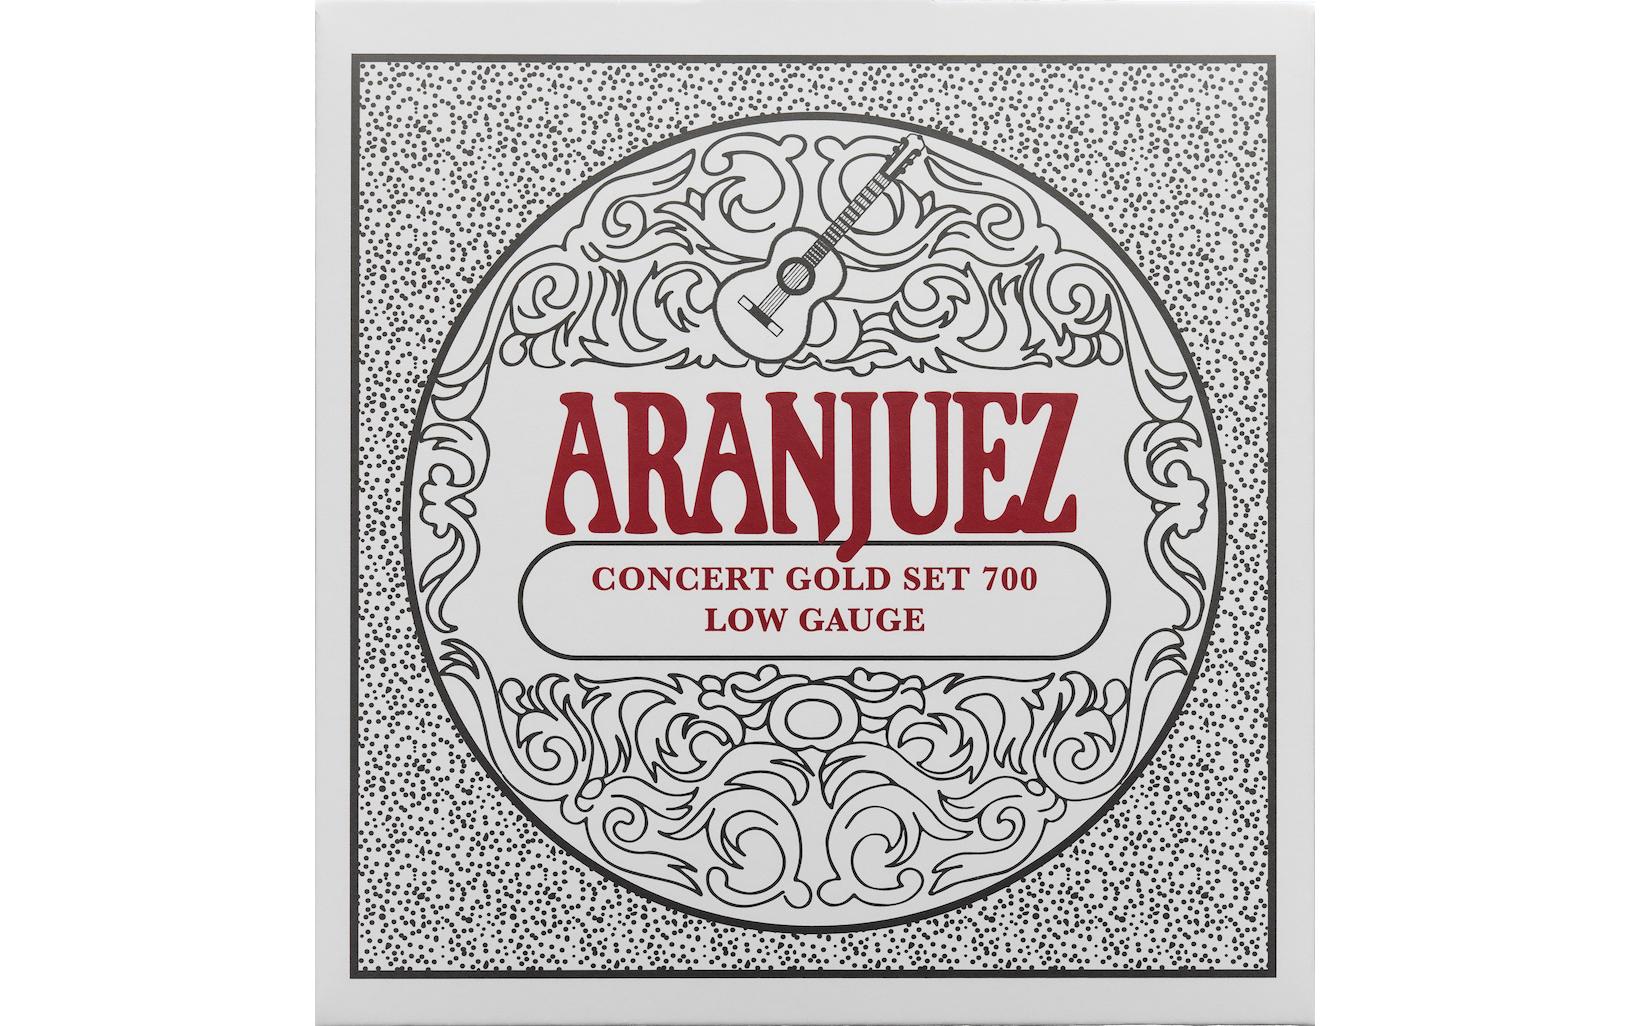 Aranjuez Gitarrensaiten Concert Gold 700 – Low Gauge